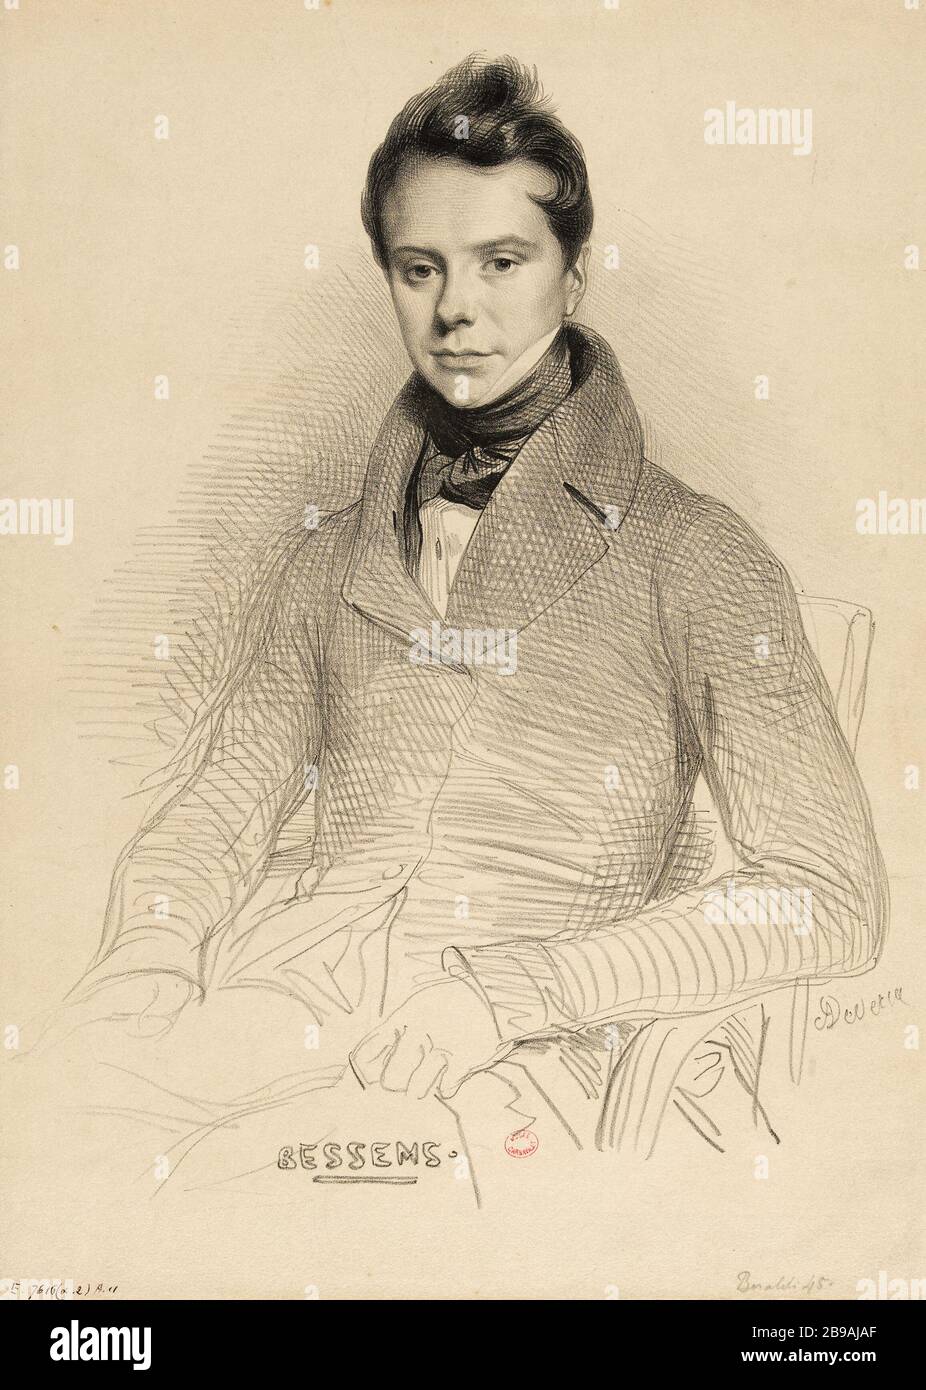 Retrato de Antoine Bessems (1806-1868), violinista y compositor. Achille Devéria (1800-1857). Retrato de Antoine Bessems (1806-1868), violoniste et compositeur. Lithographie, 1832. París, musée Carnavalet. Foto de stock